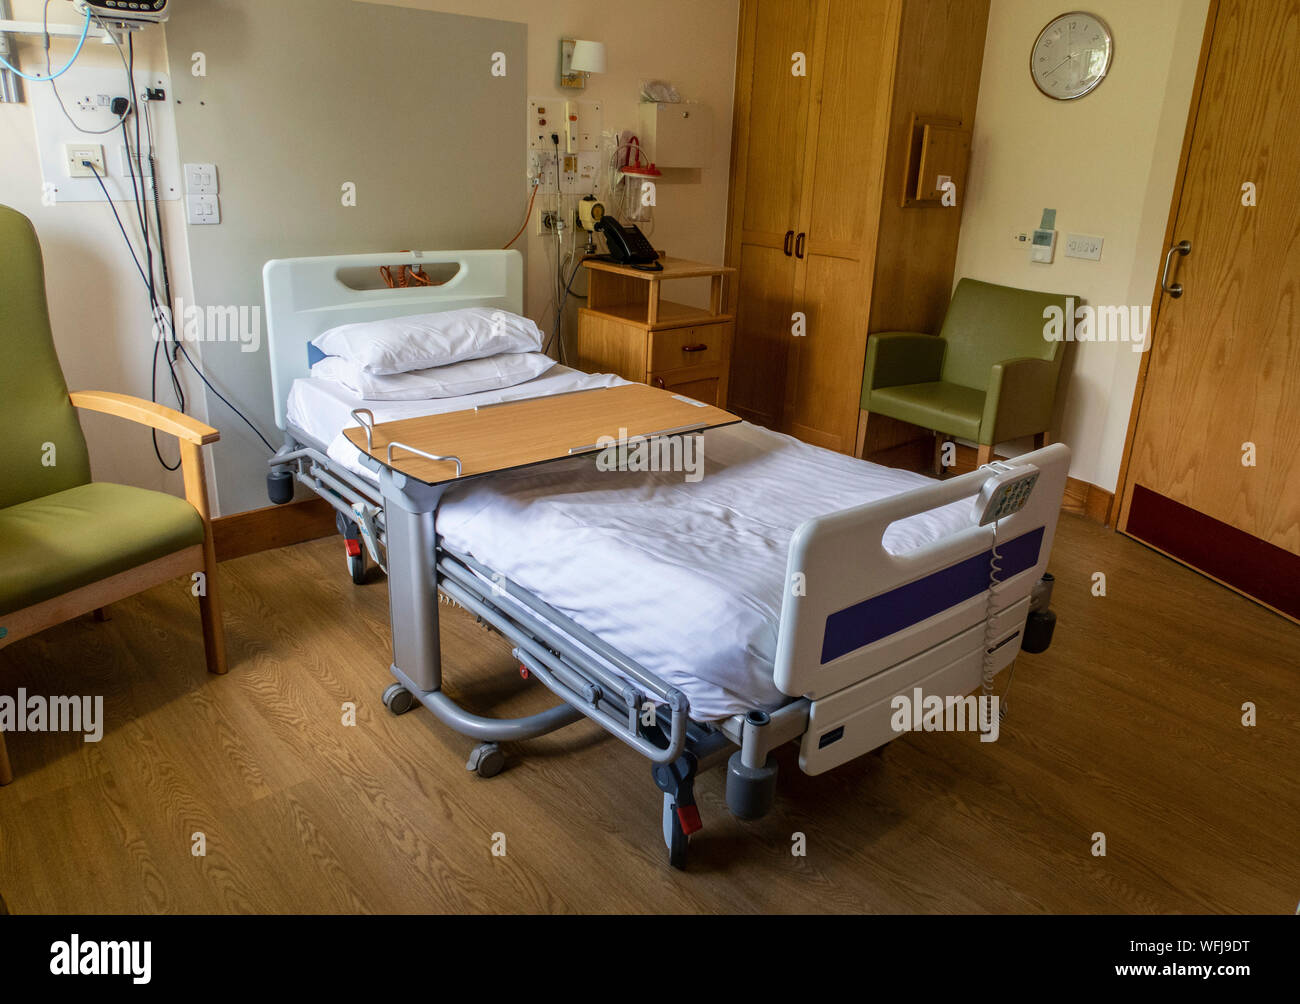 Hôpital privé, chambre avec lit double, l'équipement de surveillance,chaises,l'oxygène. Banque D'Images